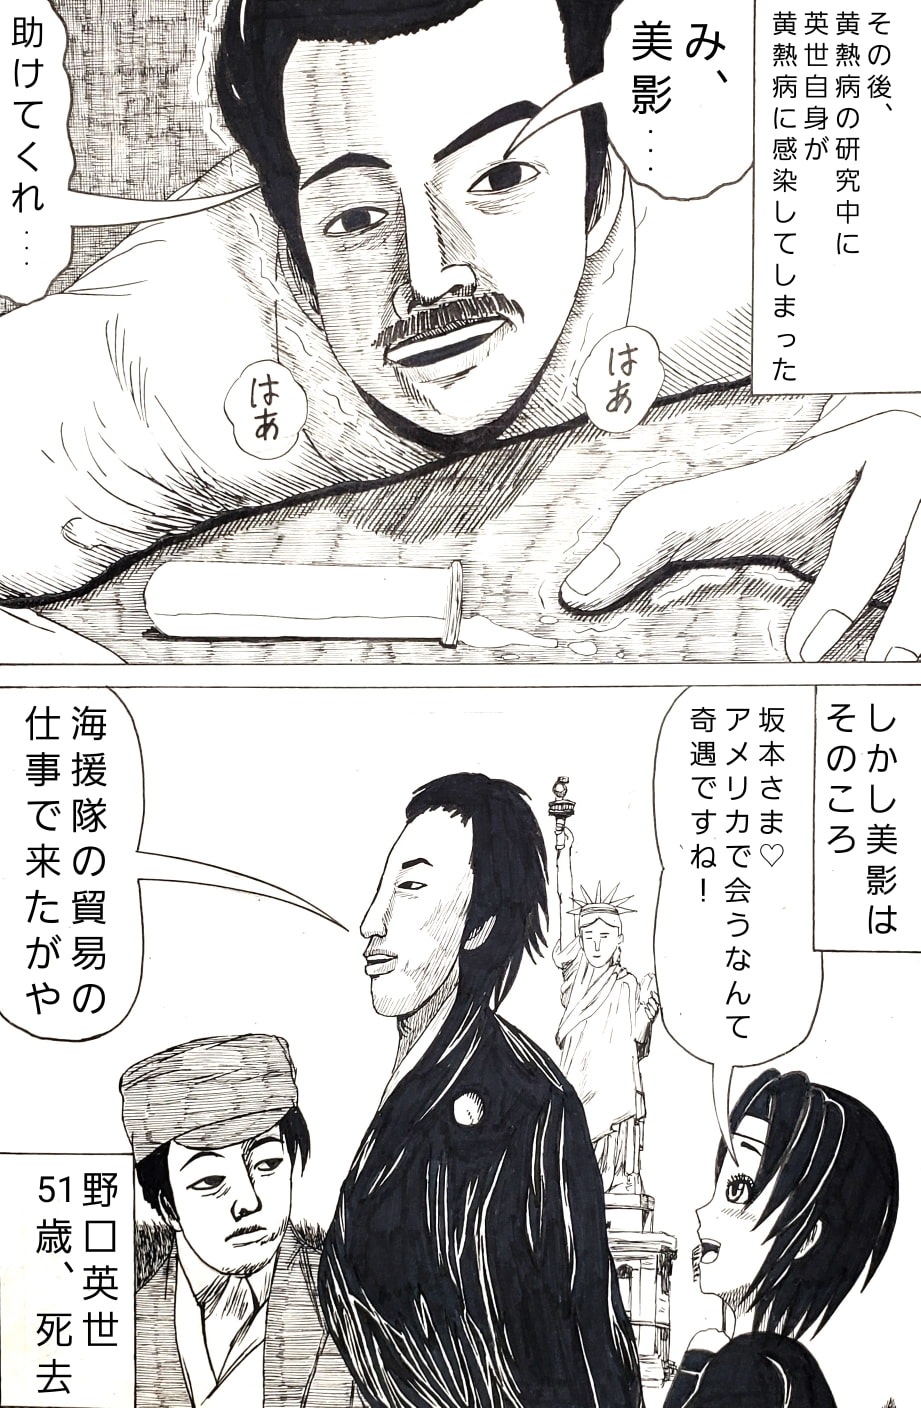 Kunoichi mikage.Bakumatsu gag story. Ryouma sakamoto Edition and hideyo noguchi Edition.